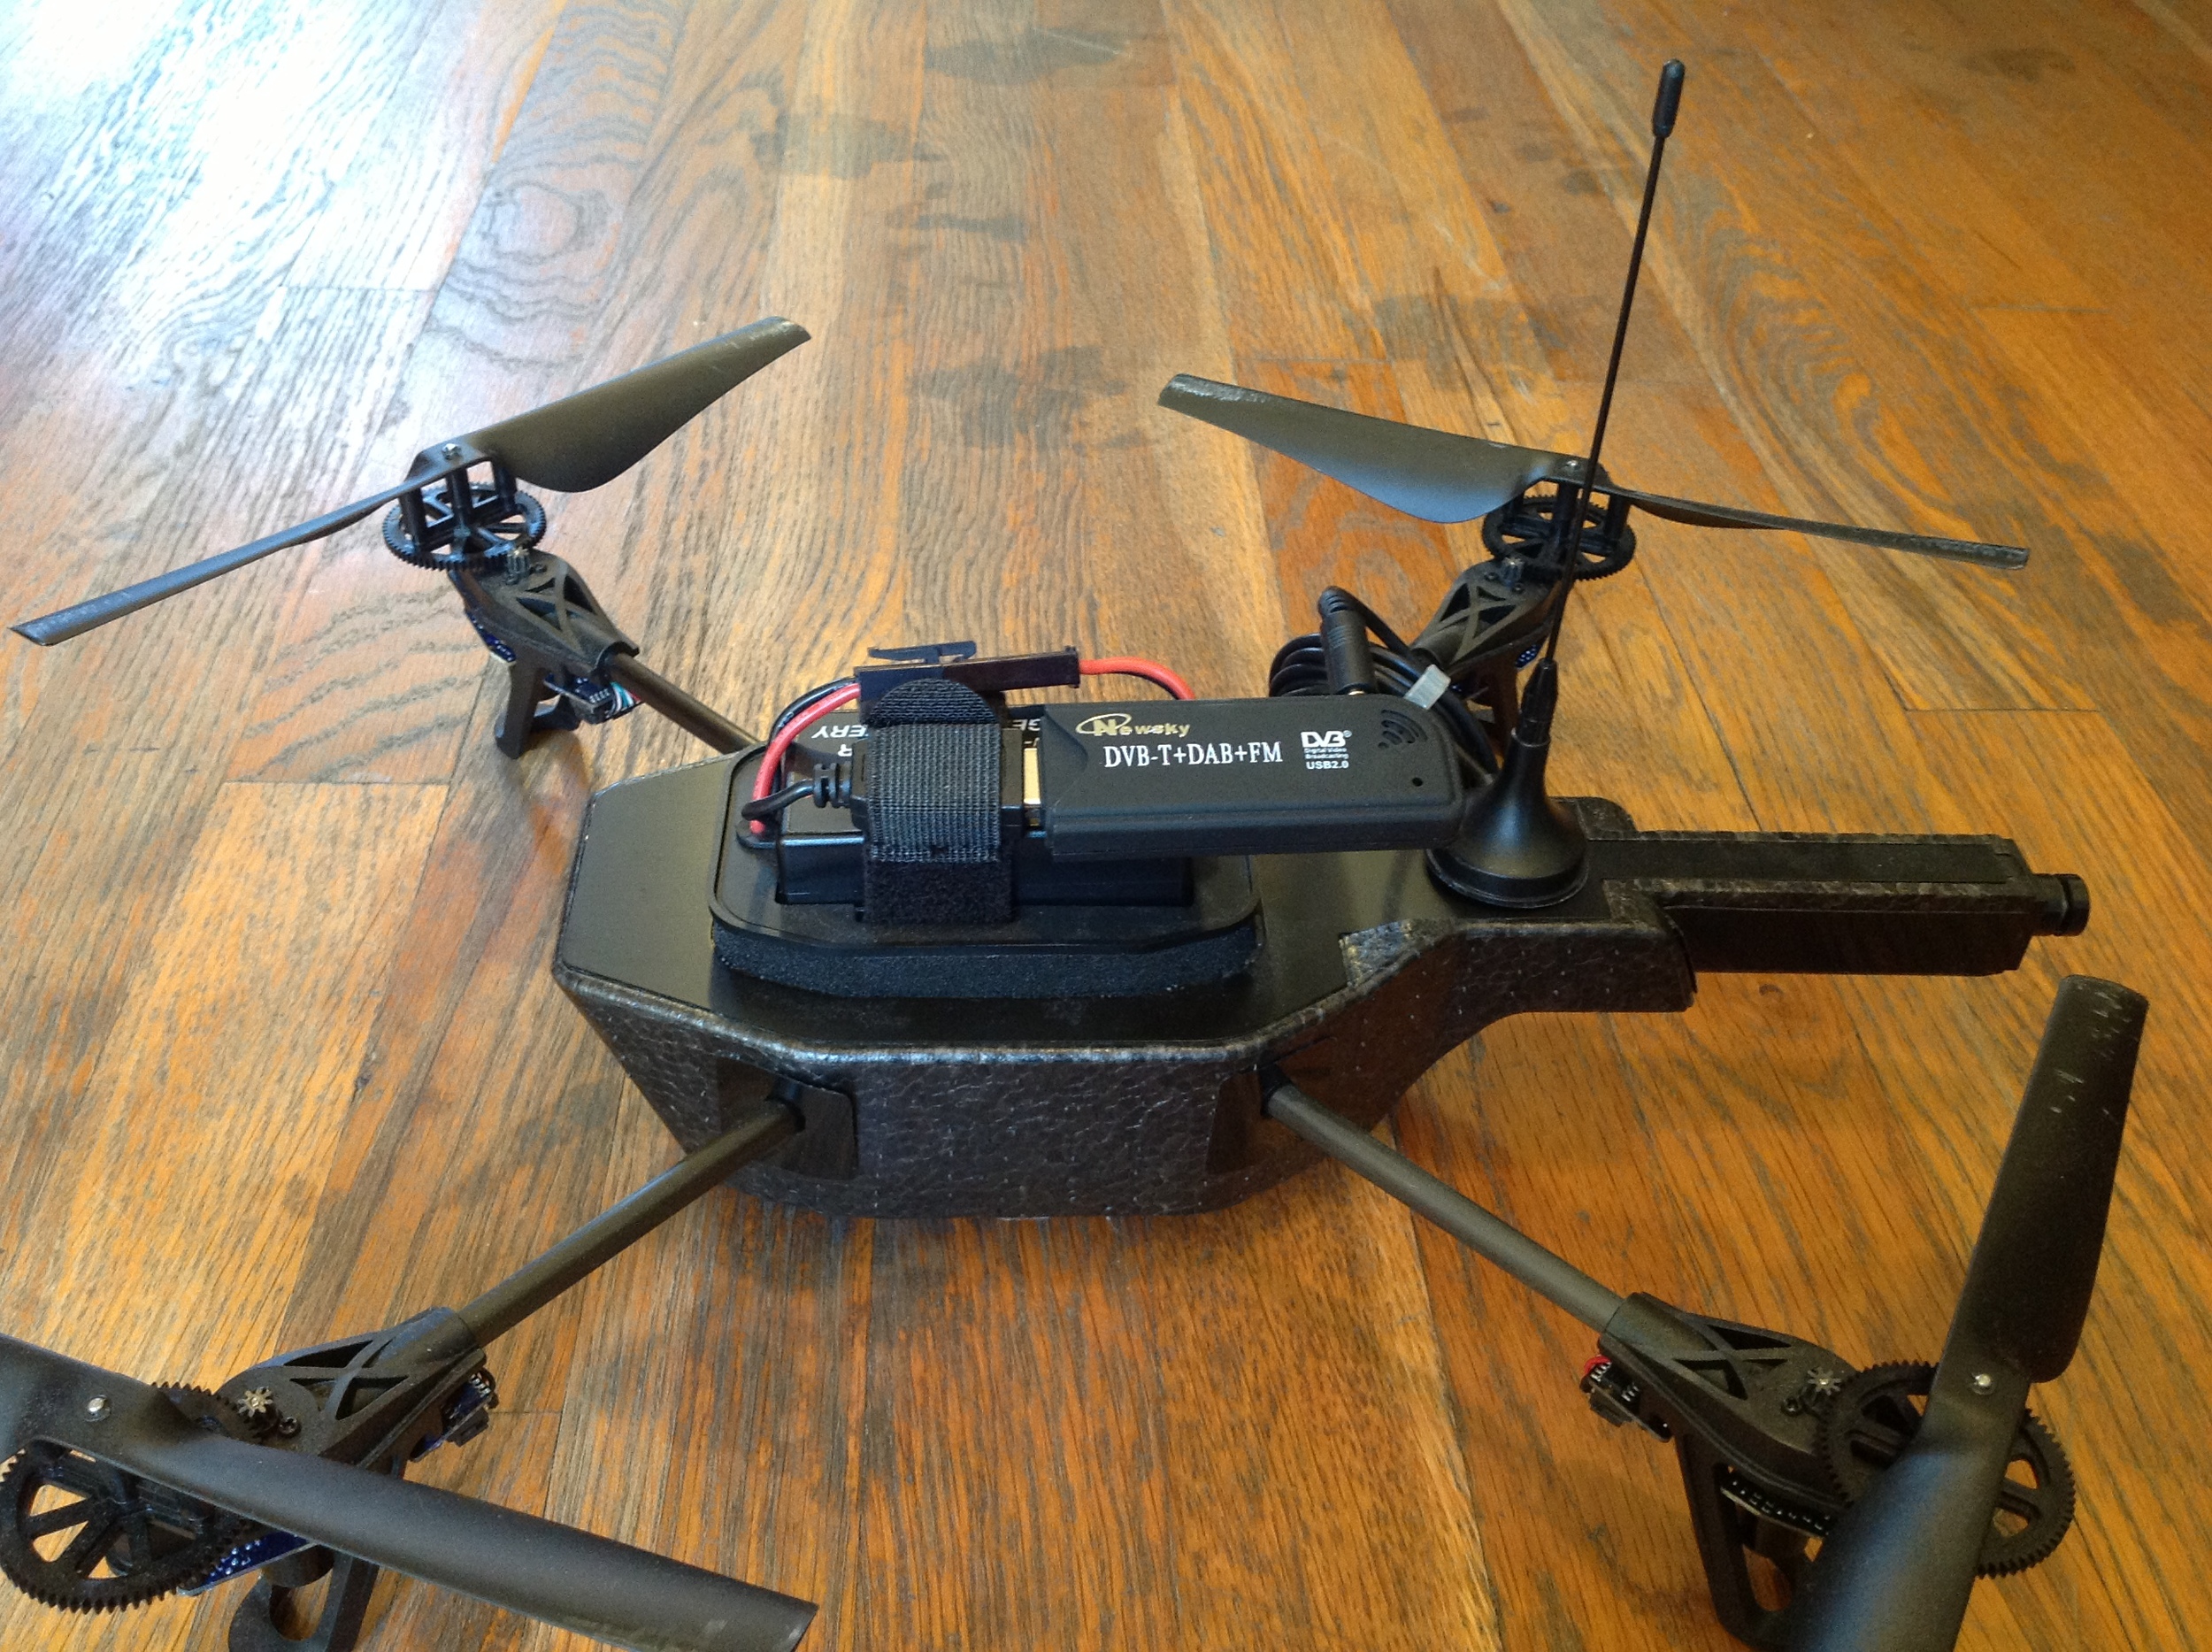 on amateur drones —